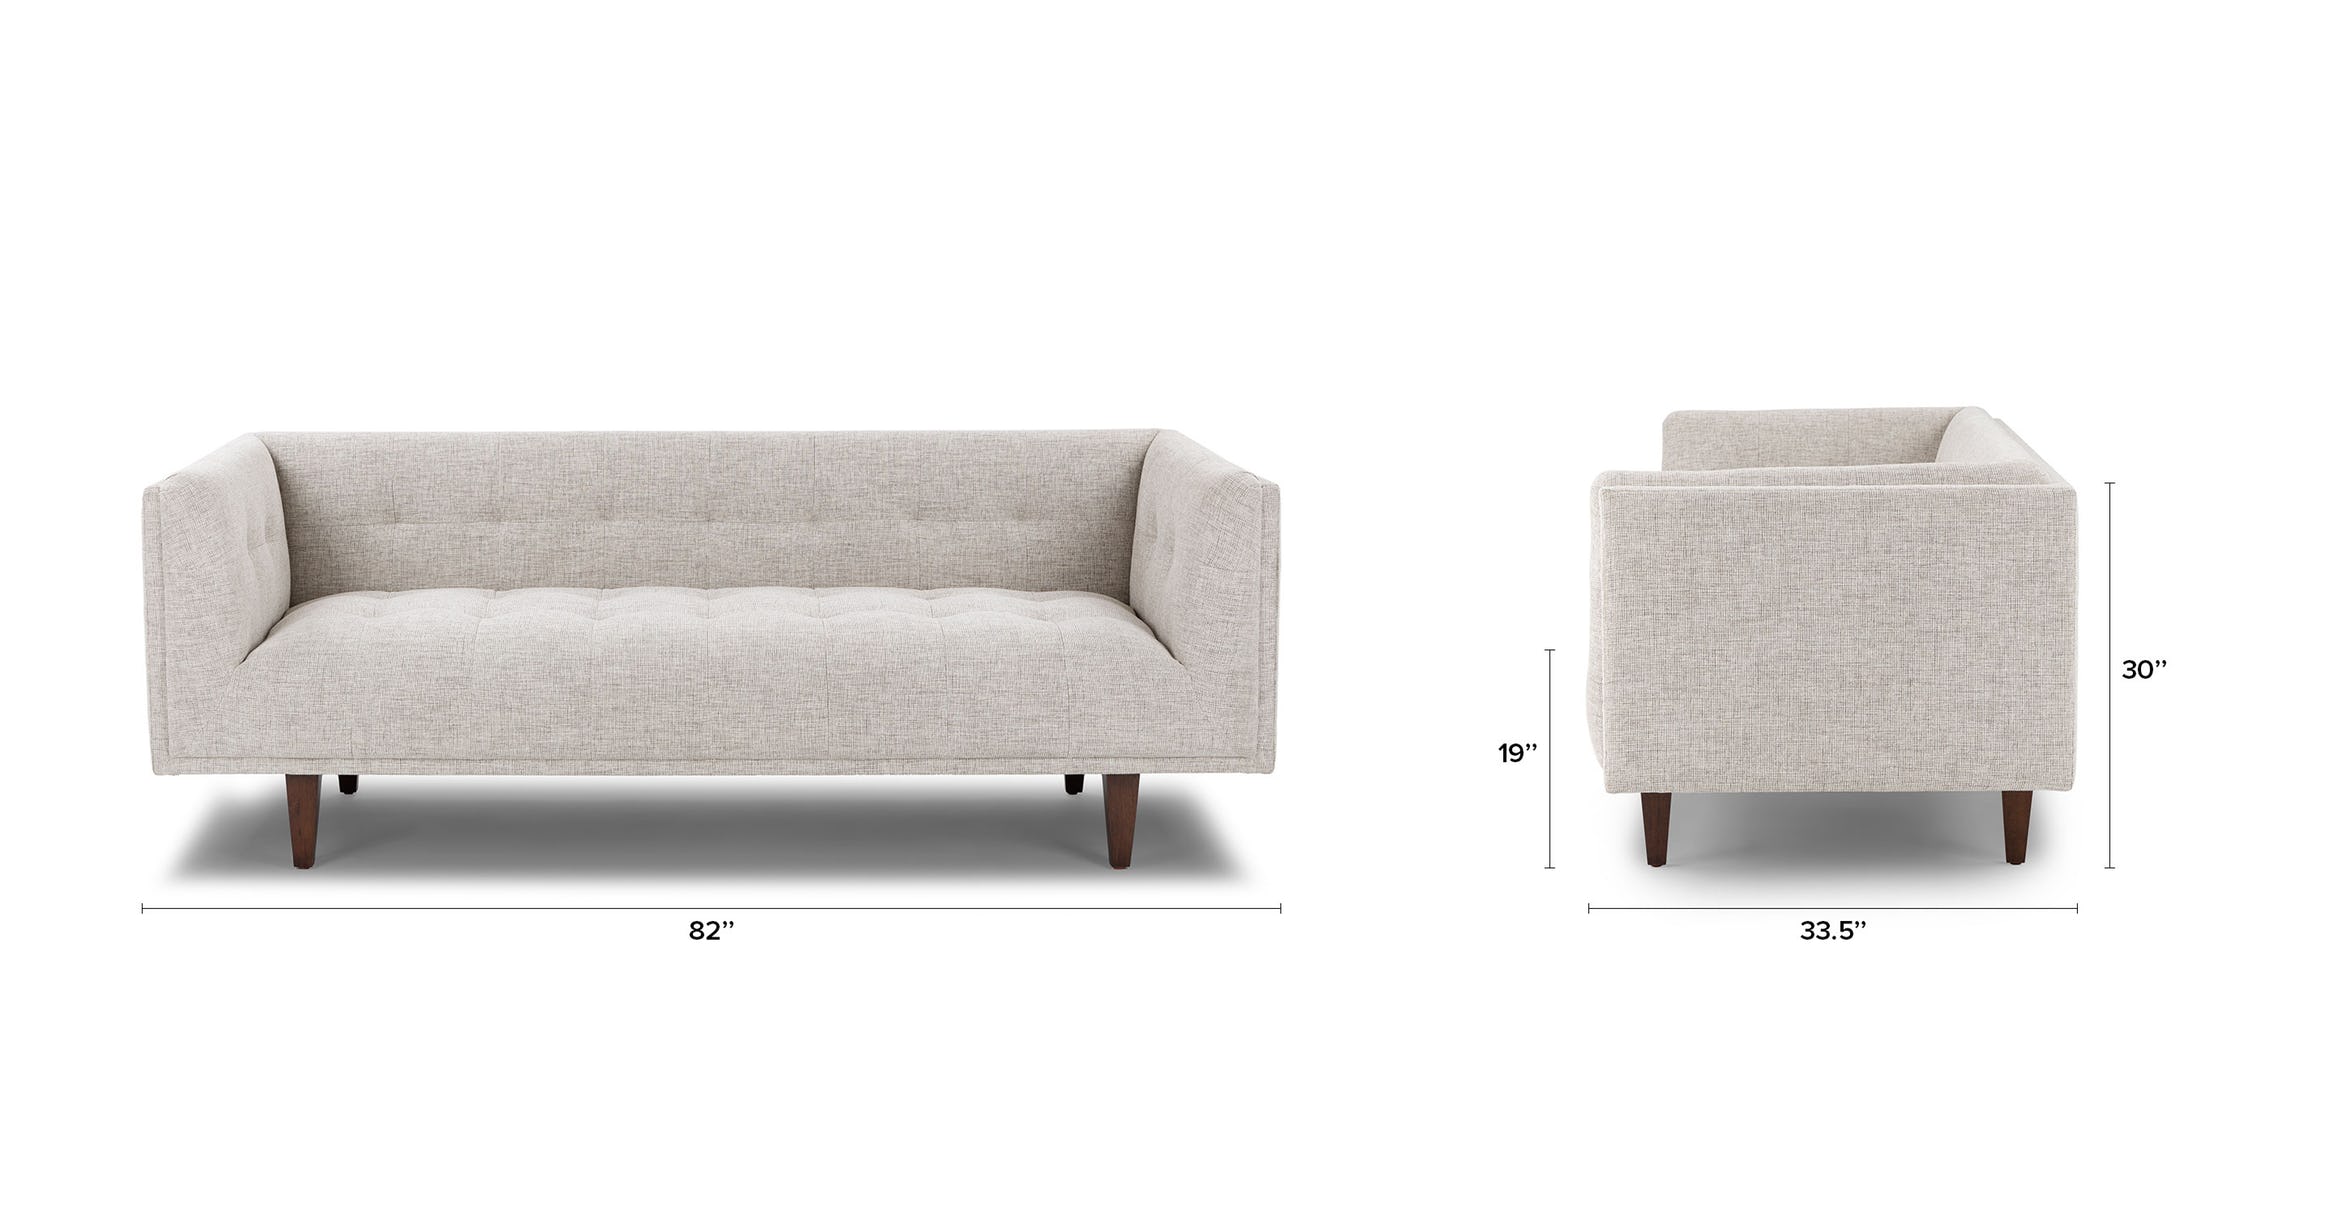 Birch Sofa dimensions